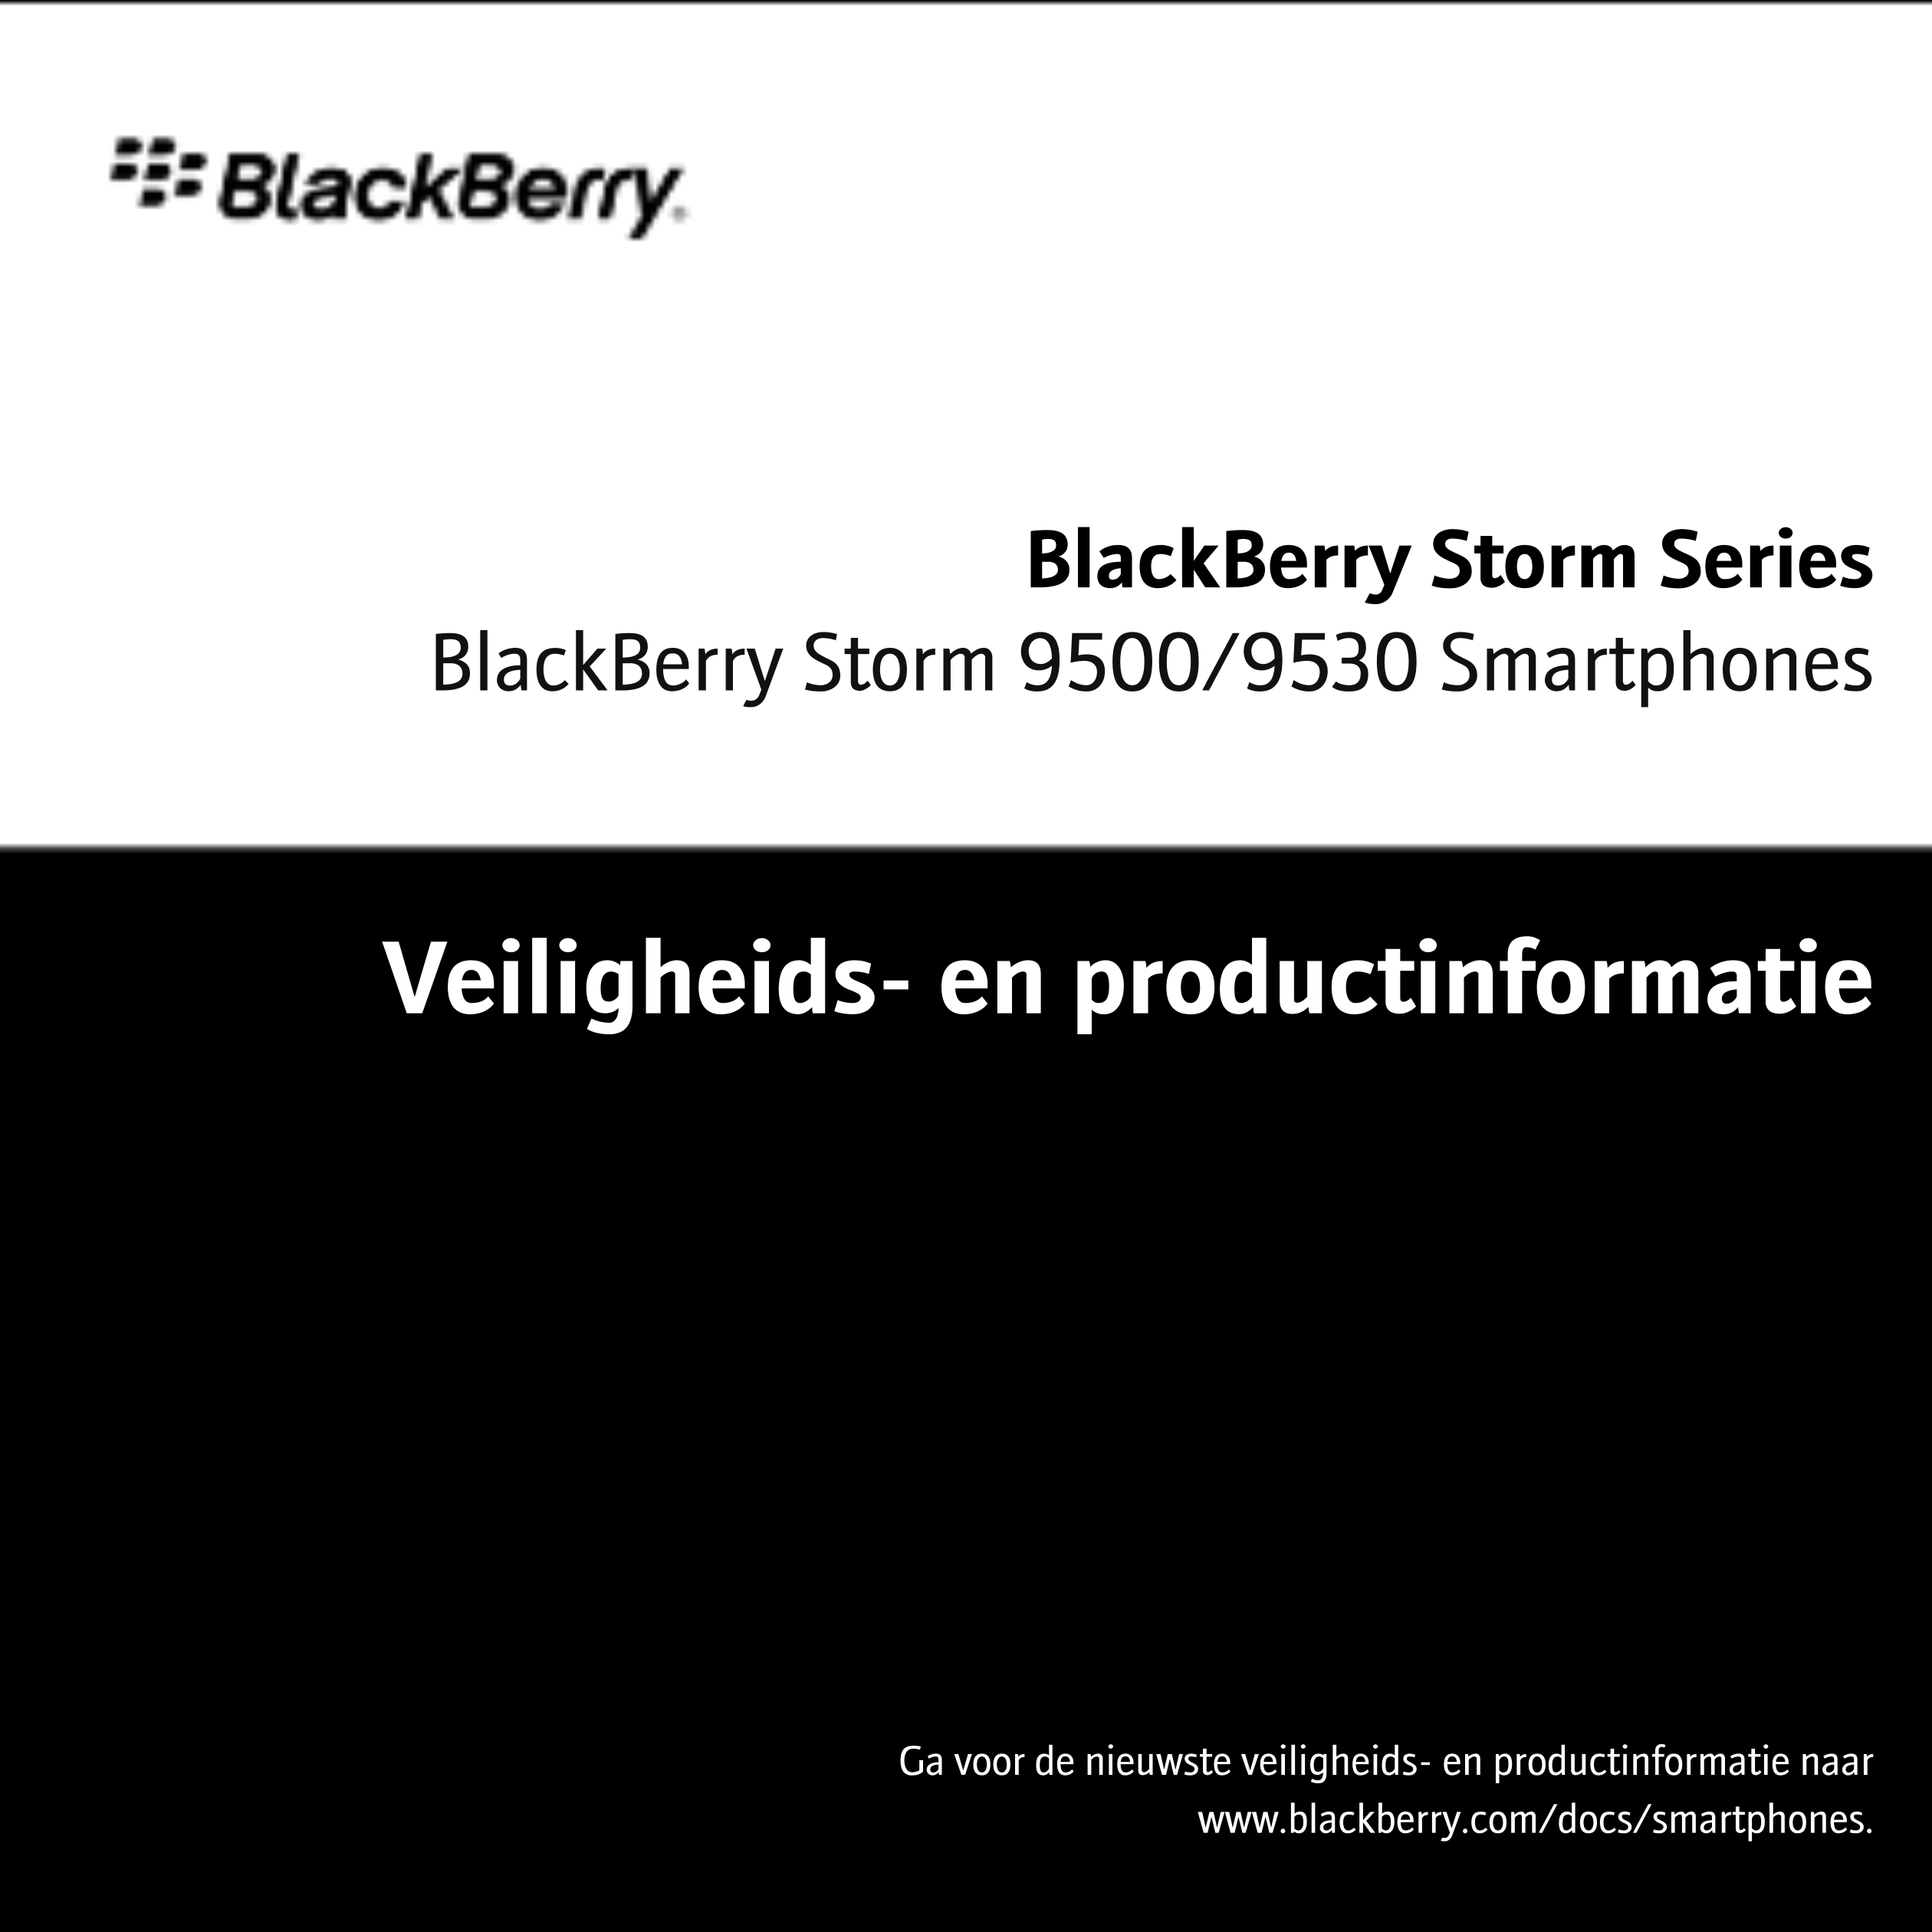 BlackBerry Storm Series
BlackBerry Storm 9500/9530 Smartphones
Veiligheids- en productinformatie
Ga voor de nieuwste veiligheids